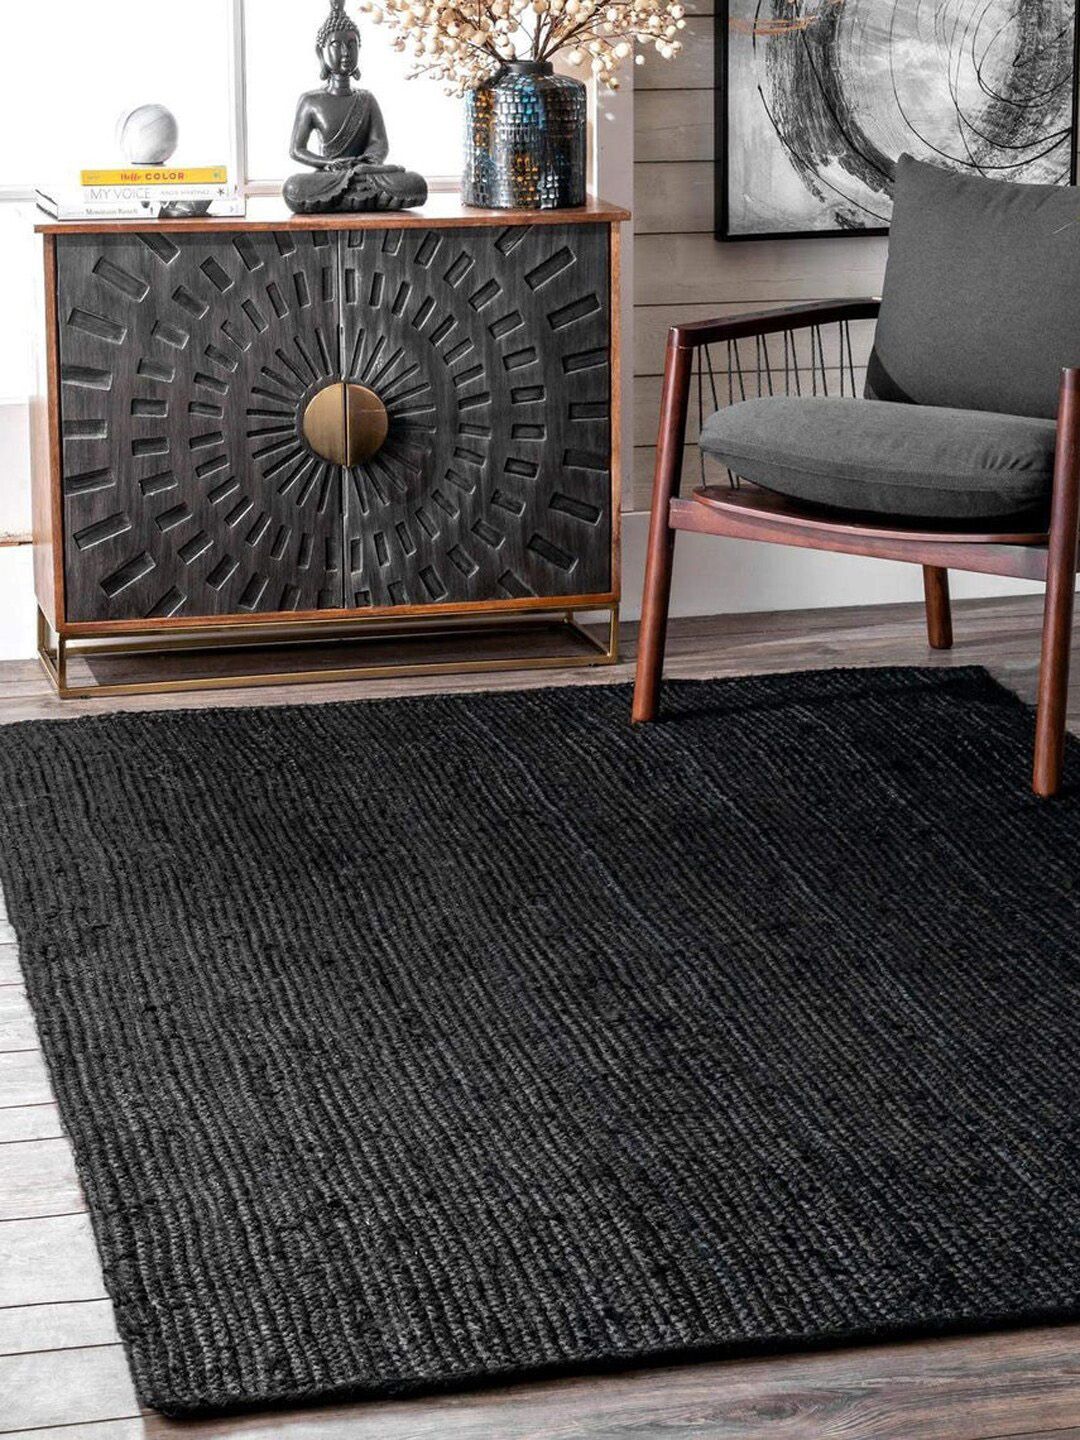 HABERE INDIA Black Handwoven Jute Carpet Price in India